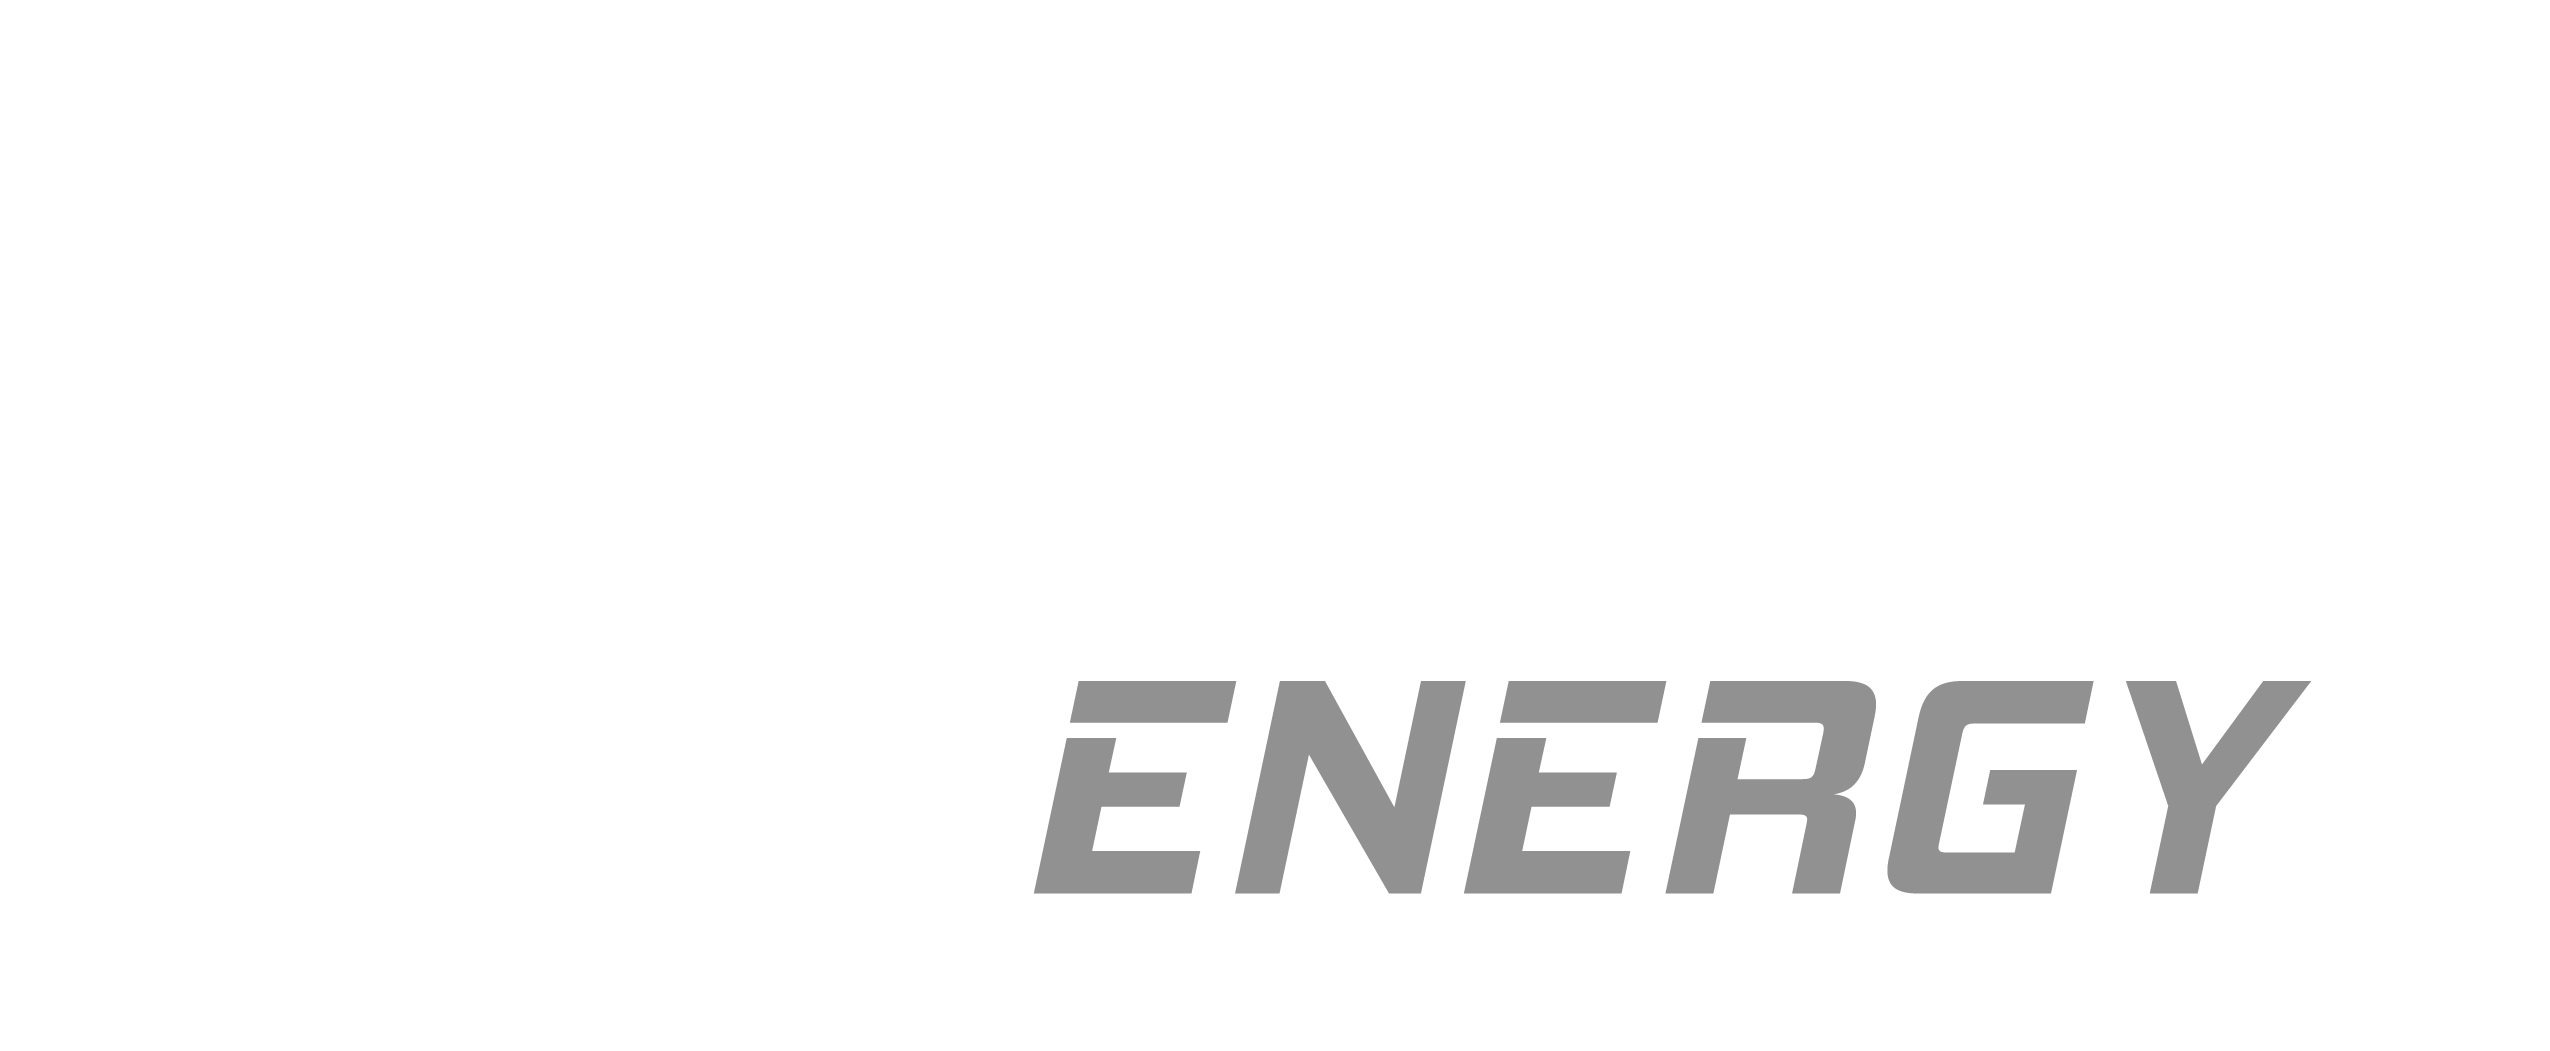 Alchematic.energy